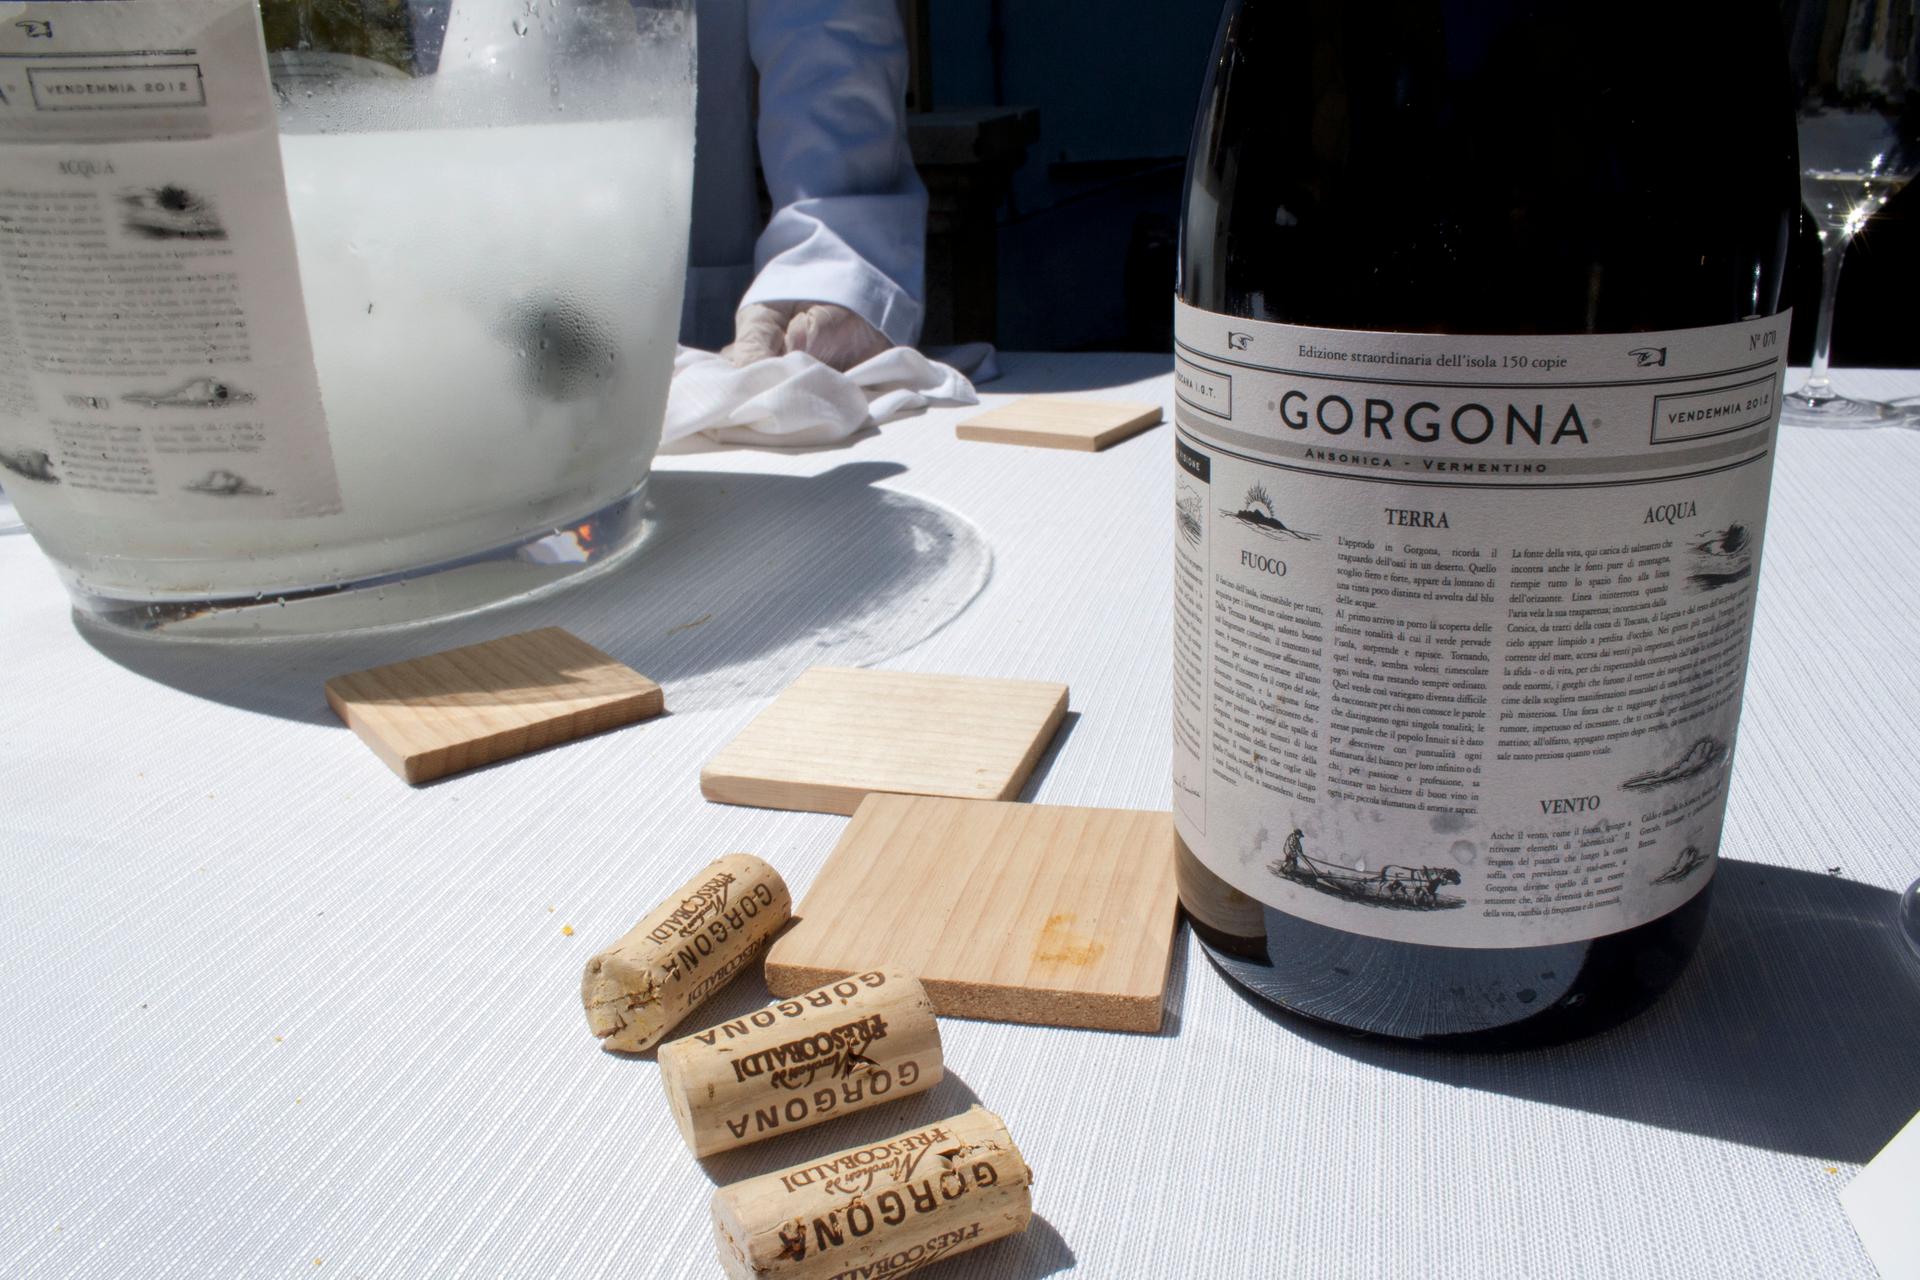 A bottle of the new Gorgona wine